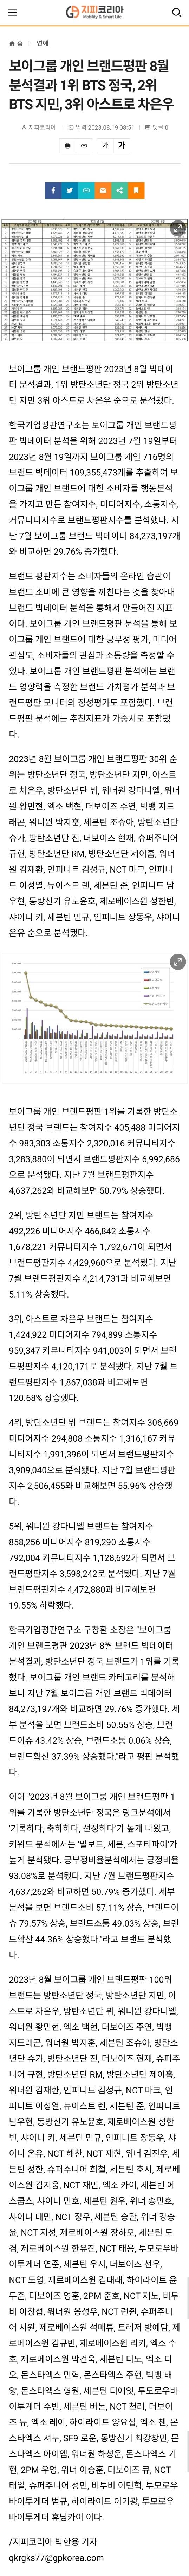 보이그룹 개인 브랜드평판 8월 분석결과 1위 BTS정국, 2위 BTS지민, 3위 아스트로 차은우 | 인스티즈